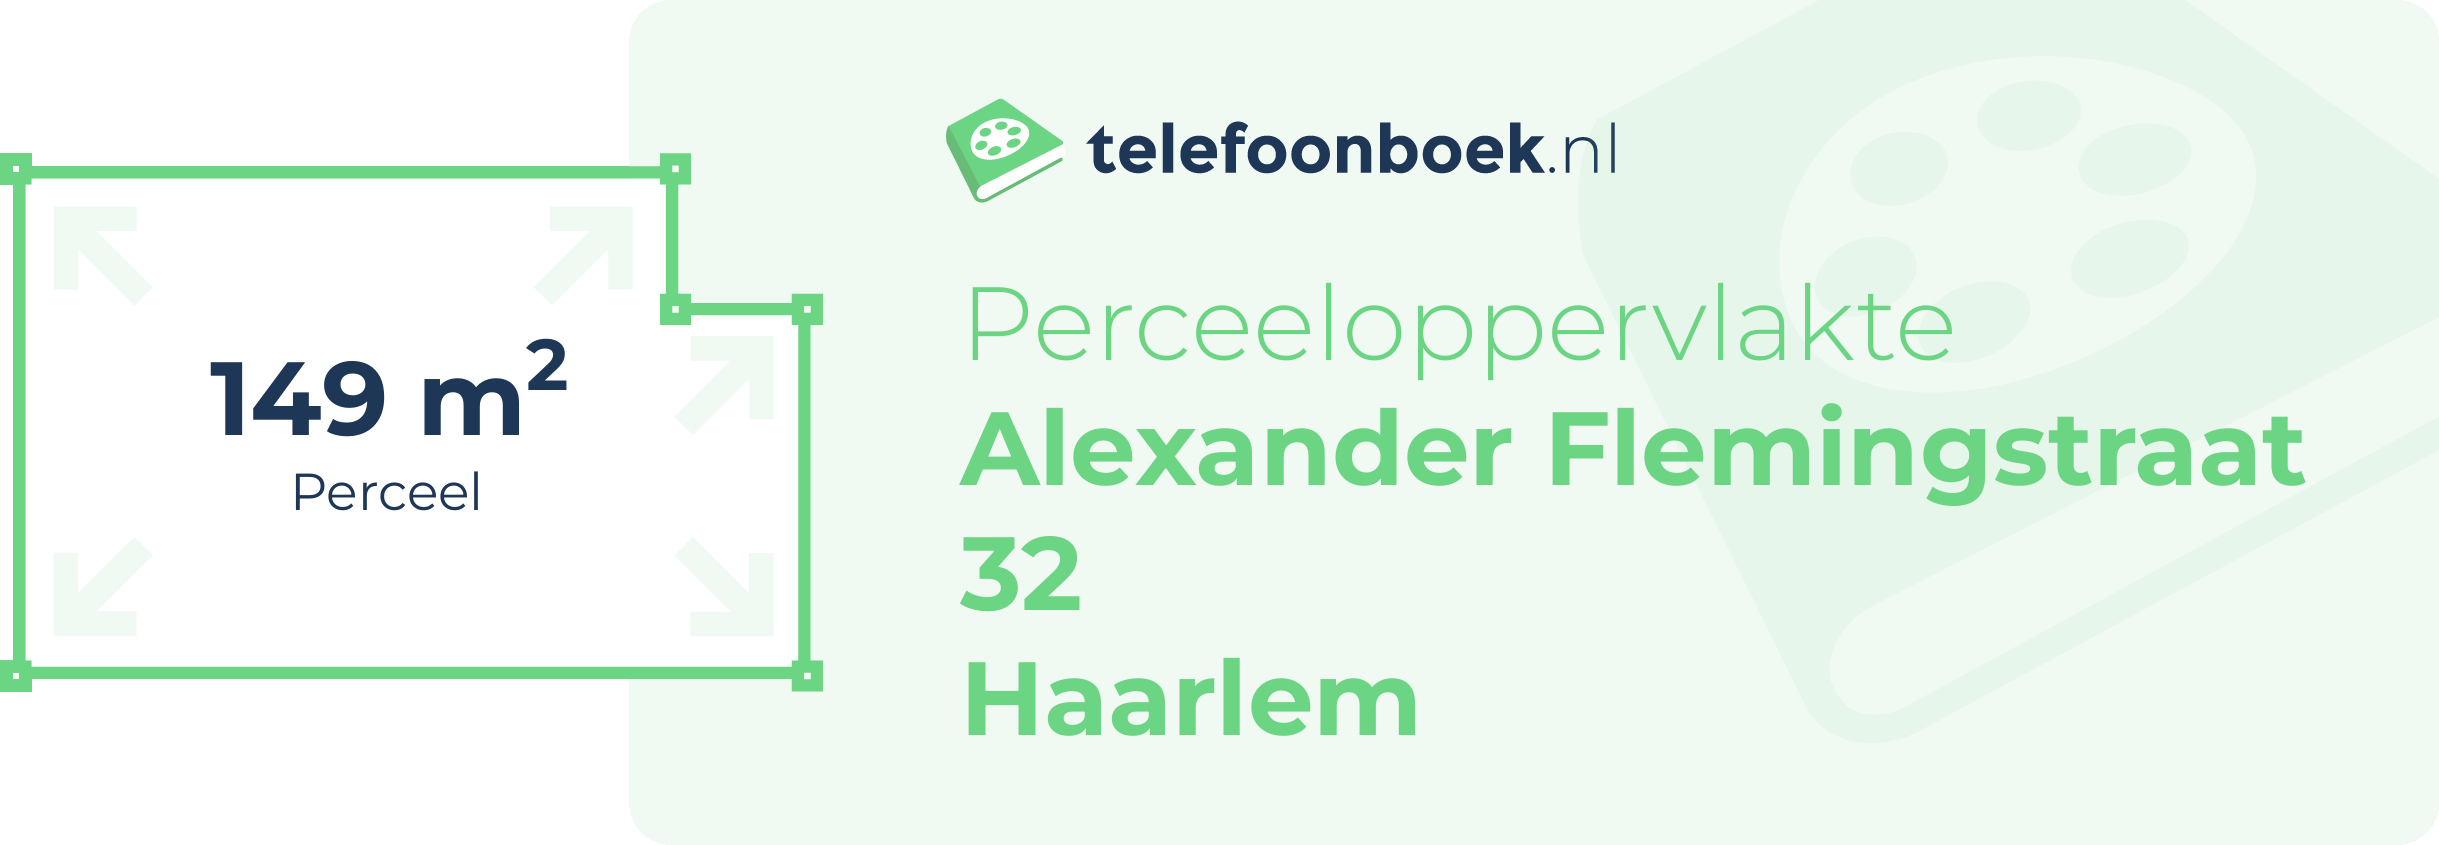 Perceeloppervlakte Alexander Flemingstraat 32 Haarlem